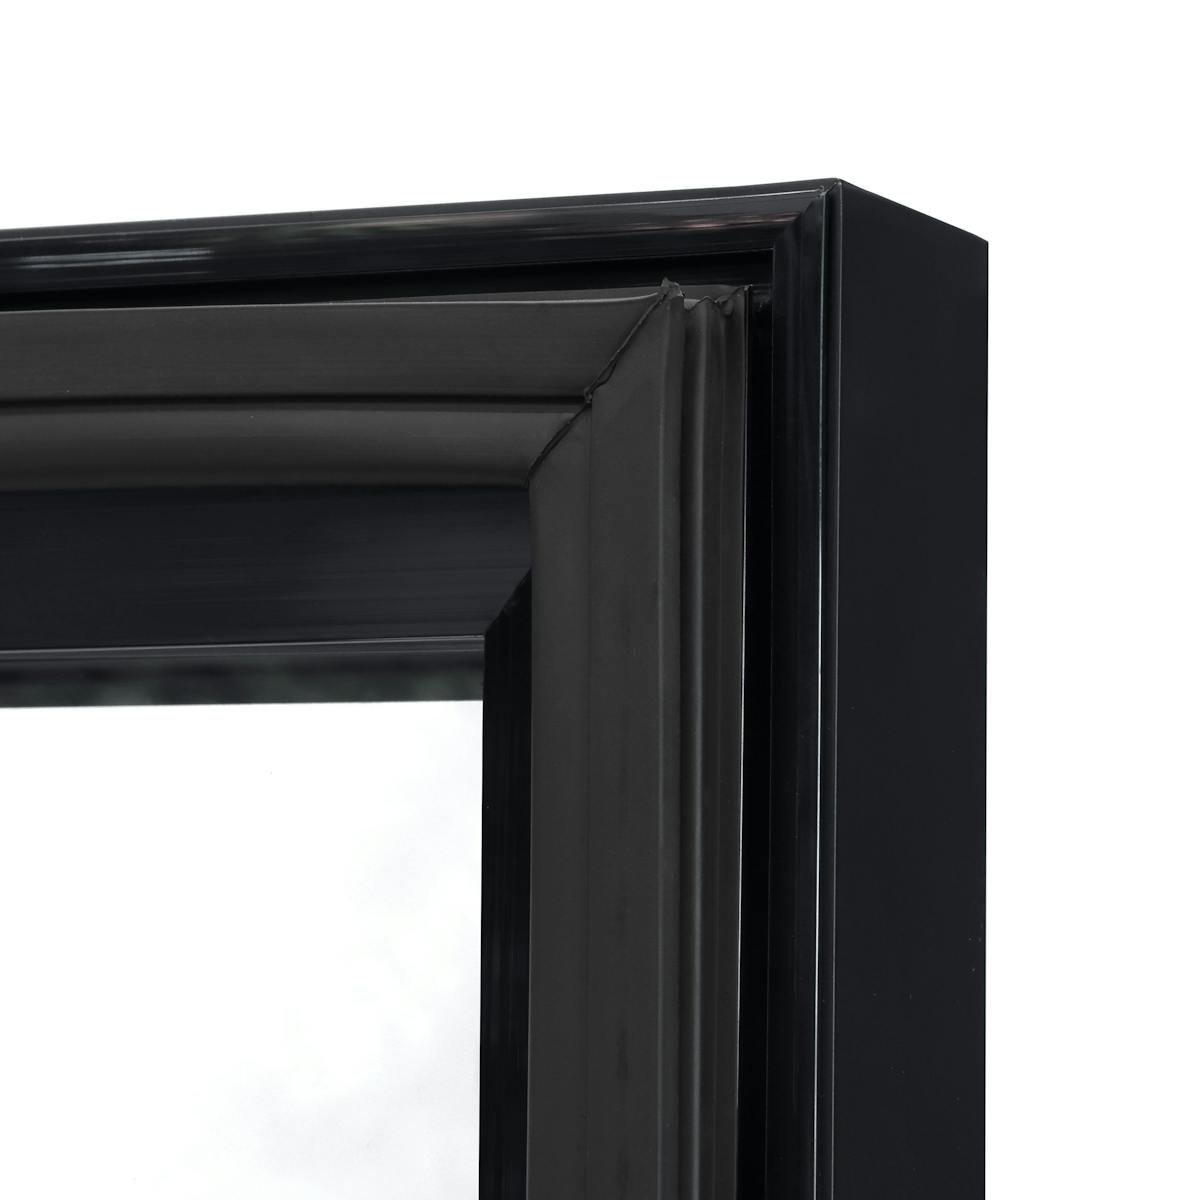 Minibar Freezer - 460mm - 1 Glass Door - Built-In 19-Inch LCD Display